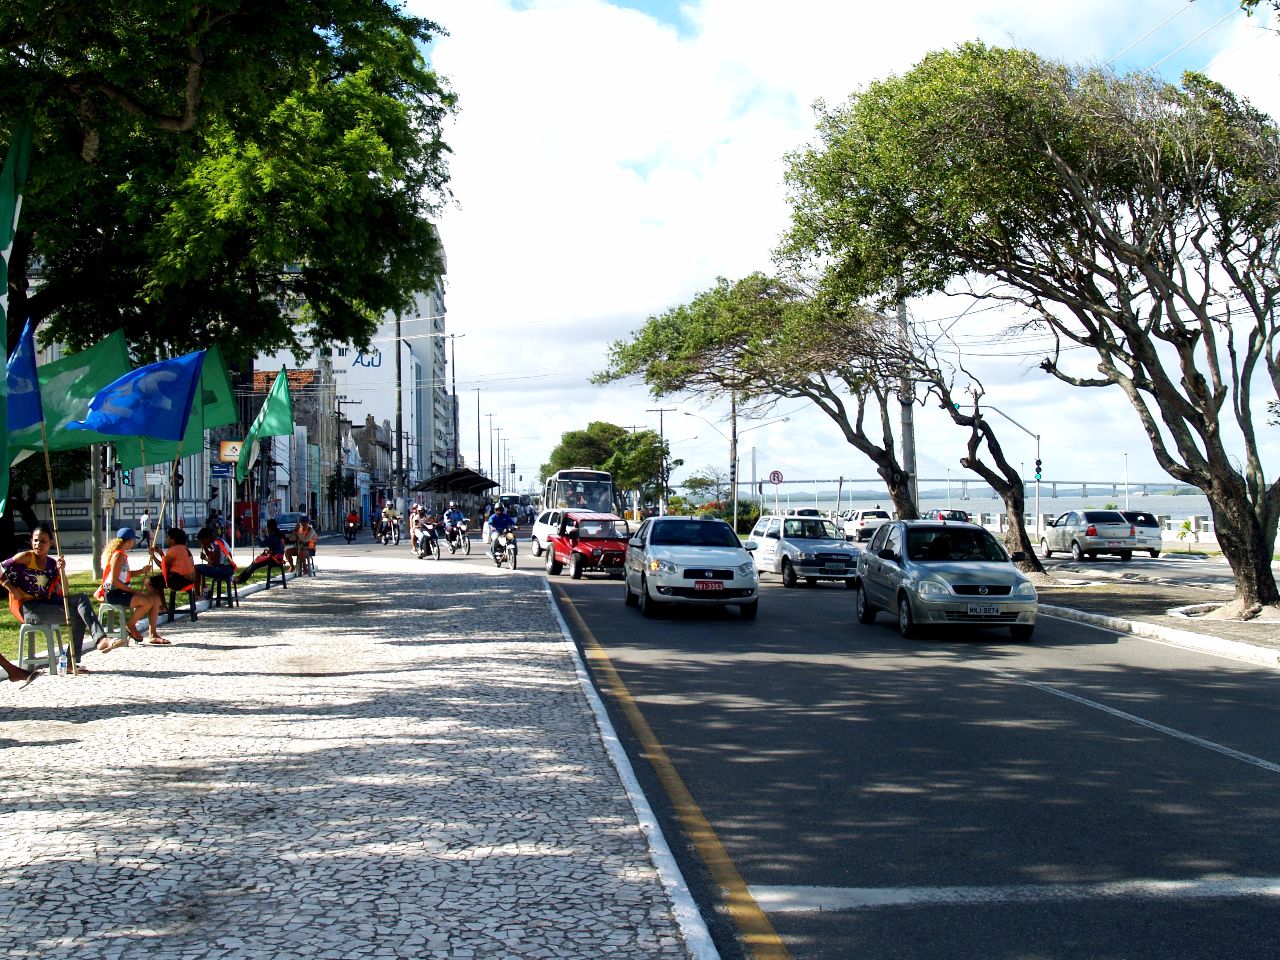 Площадь Фаусту Кардозу Аракажу, Бразилия